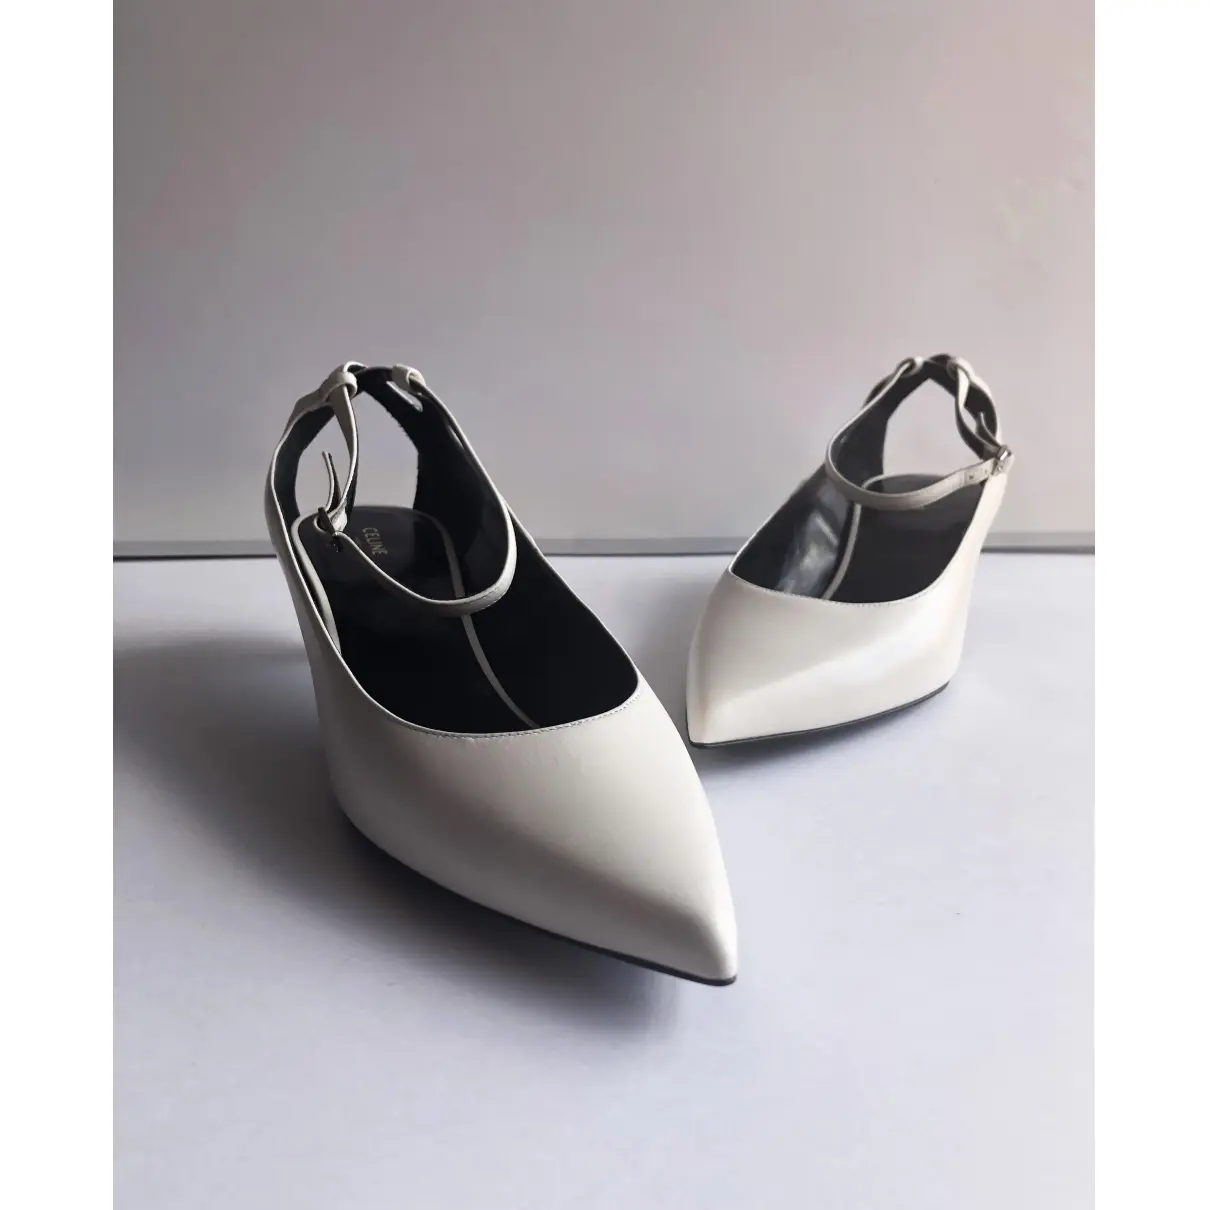 Sharp leather heels Celine